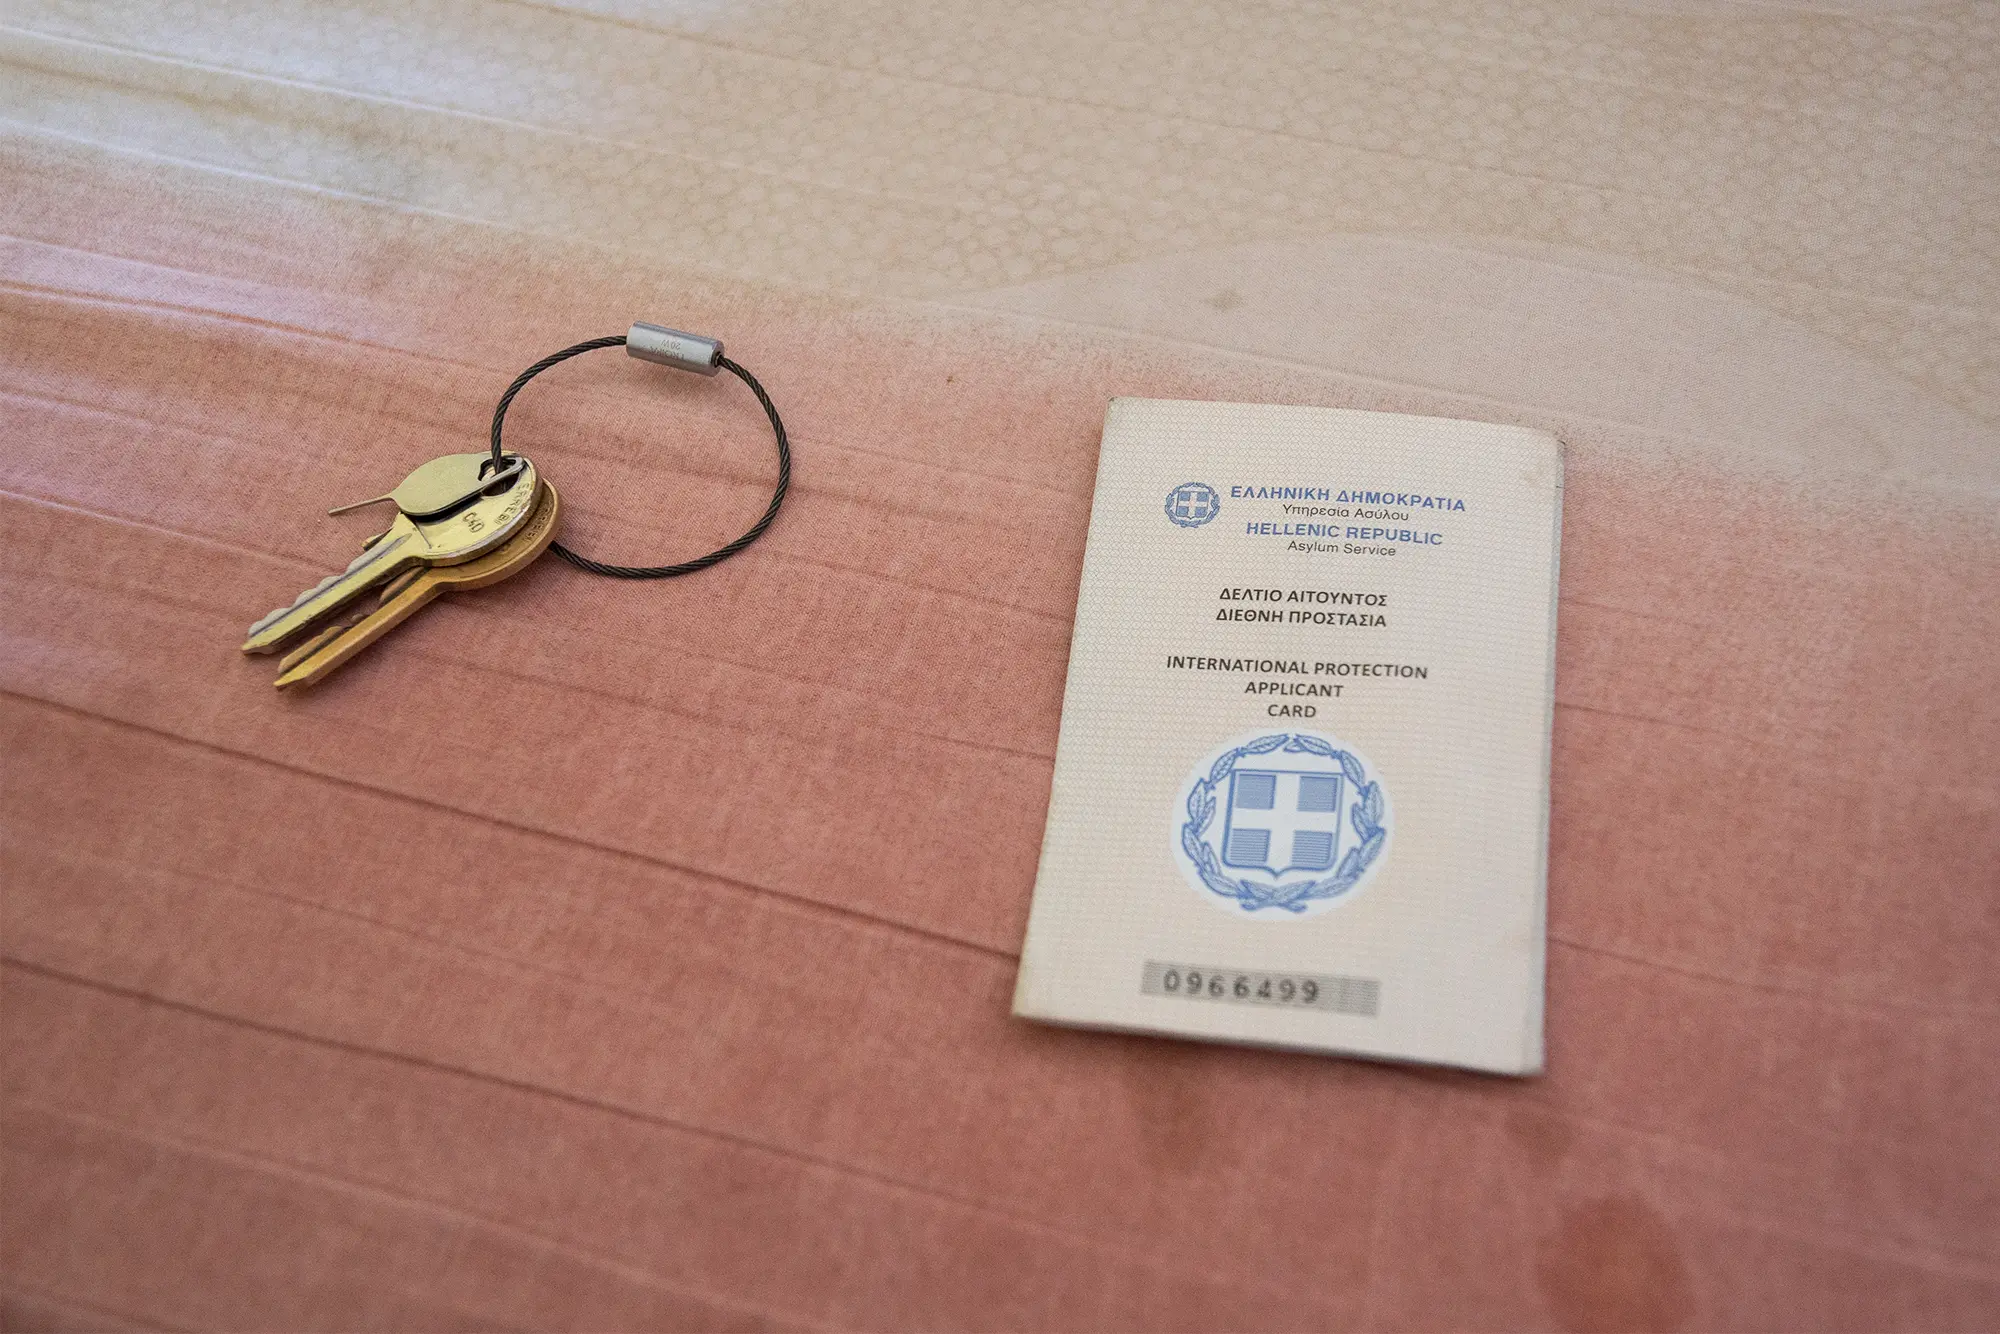 An asylum card with a house key